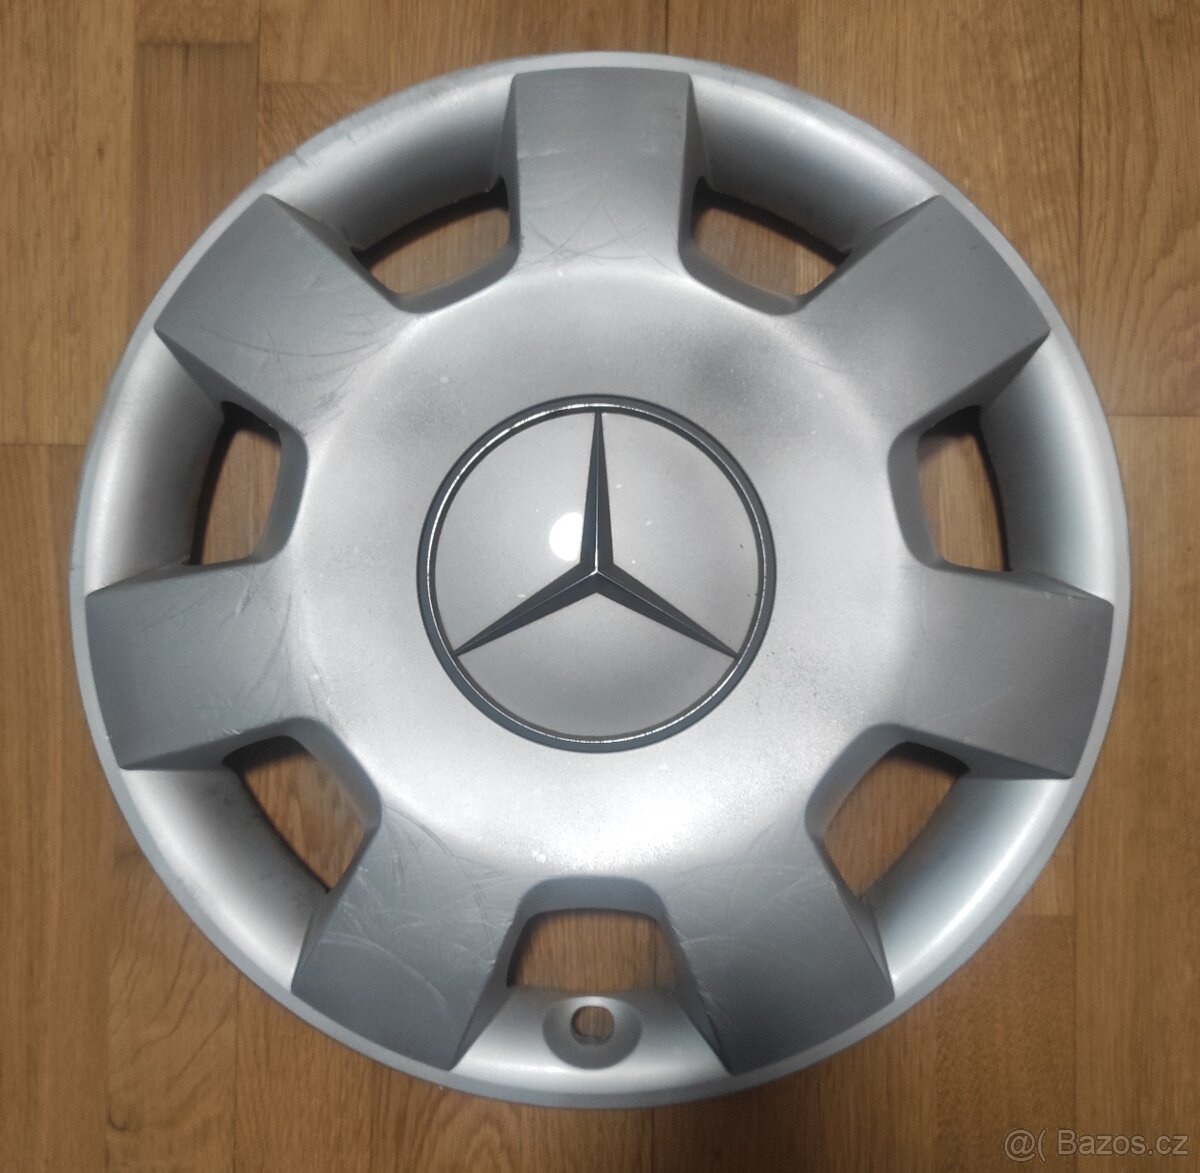 1 kus poklice Mercedes-Benz B W-245 (16")